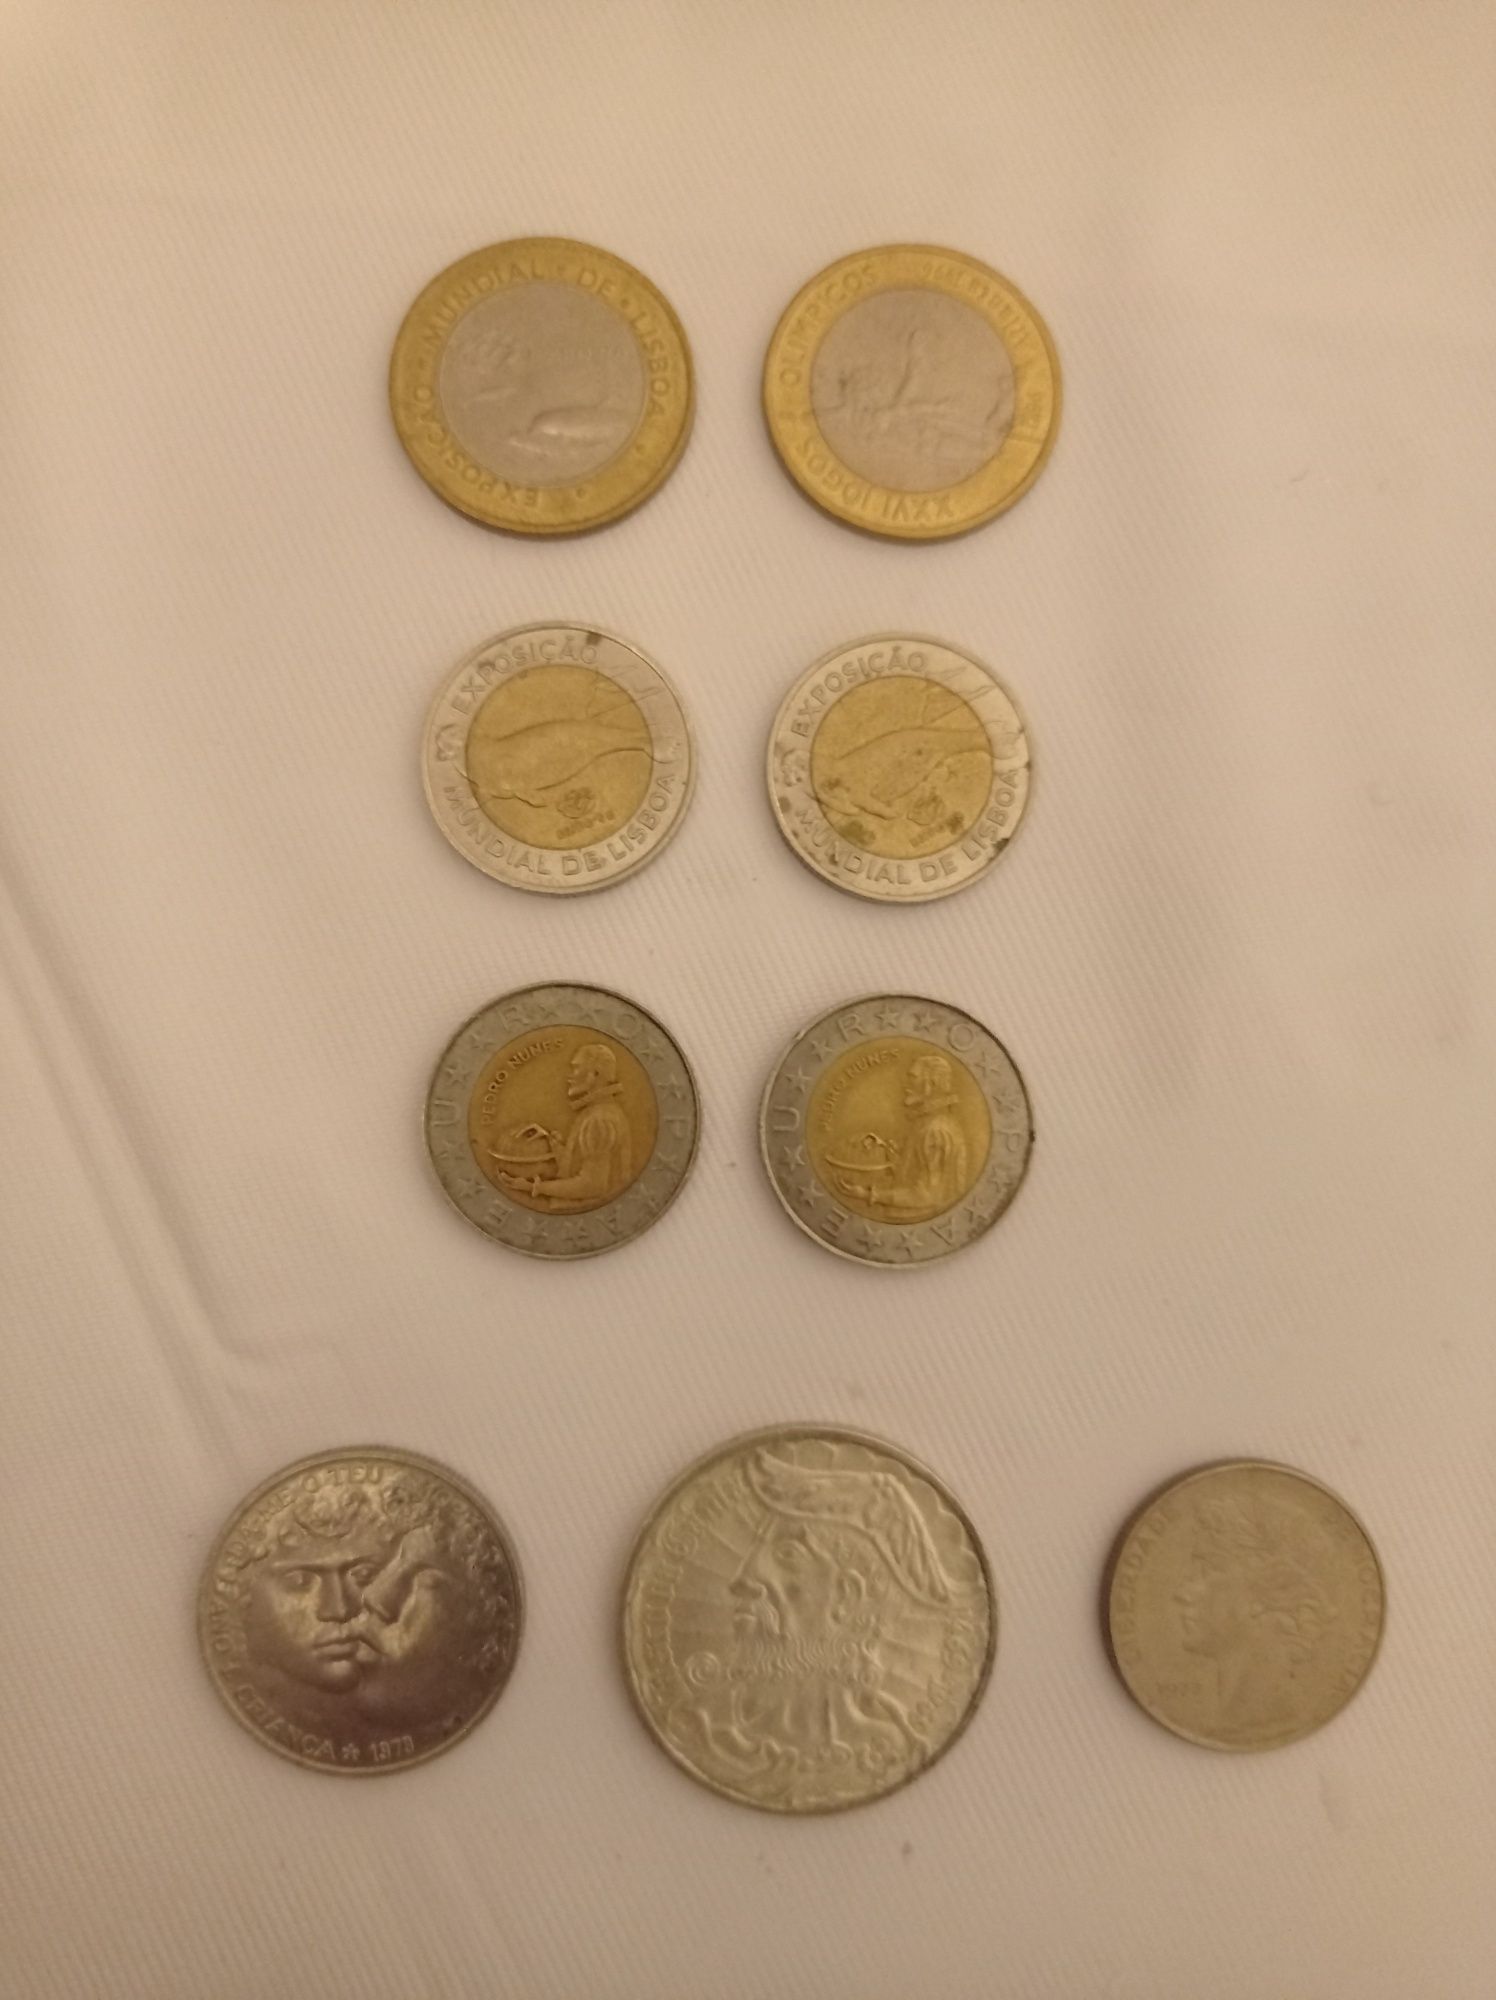 Várias moedas comemorativas e antigas